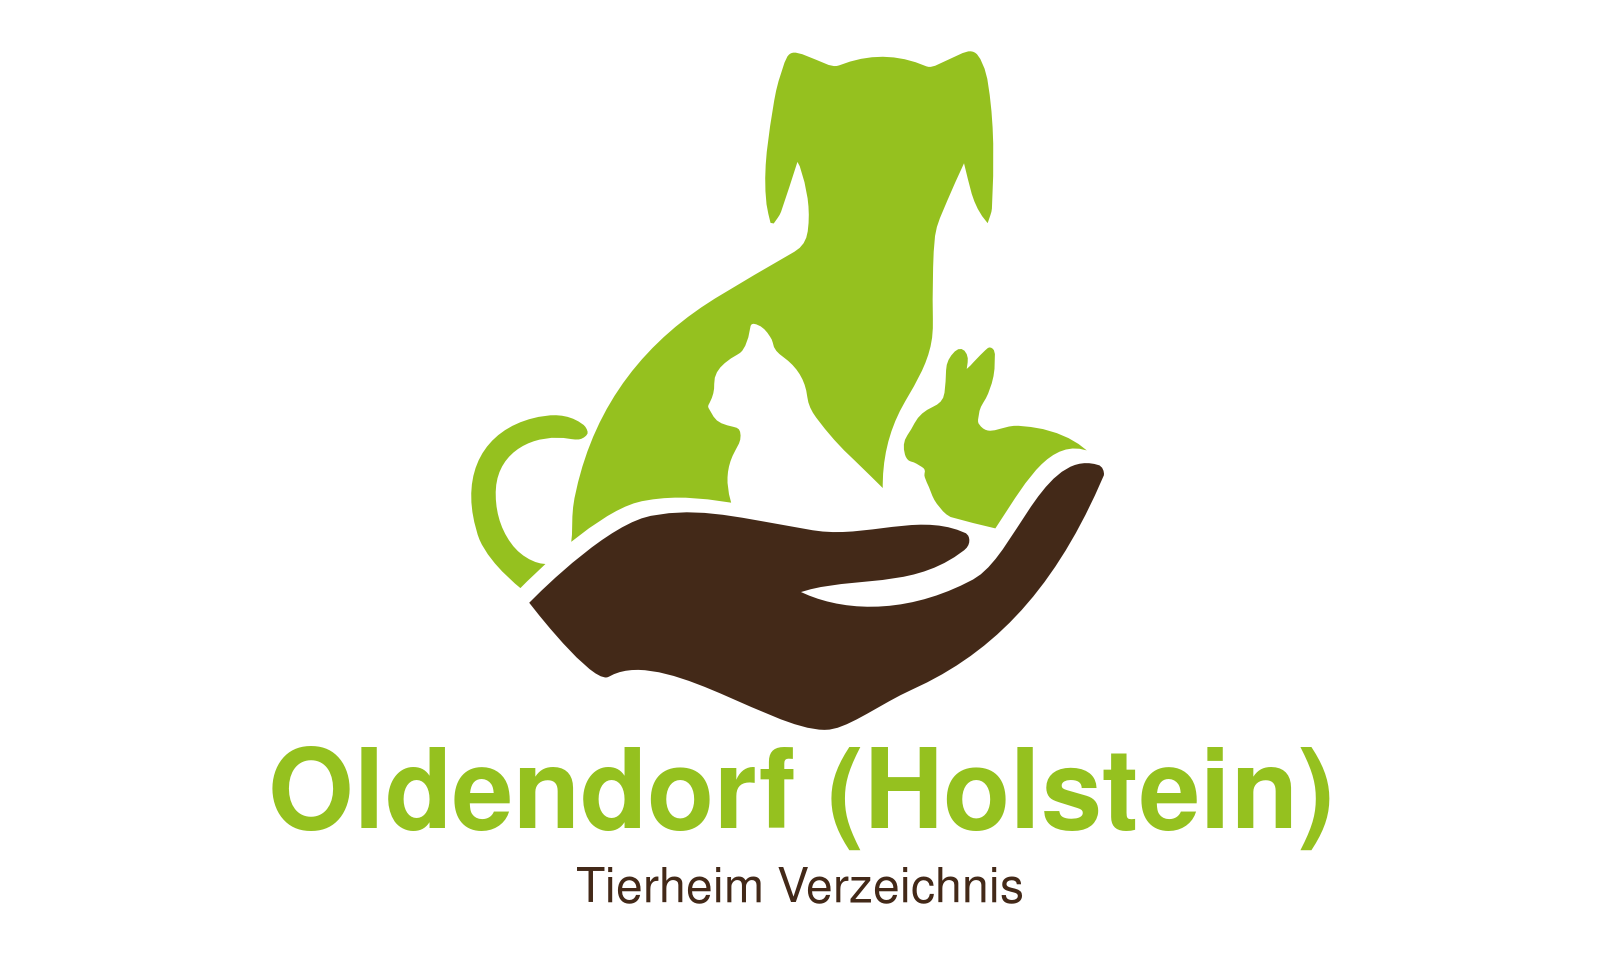 Tierheim Oldendorf (Holstein)